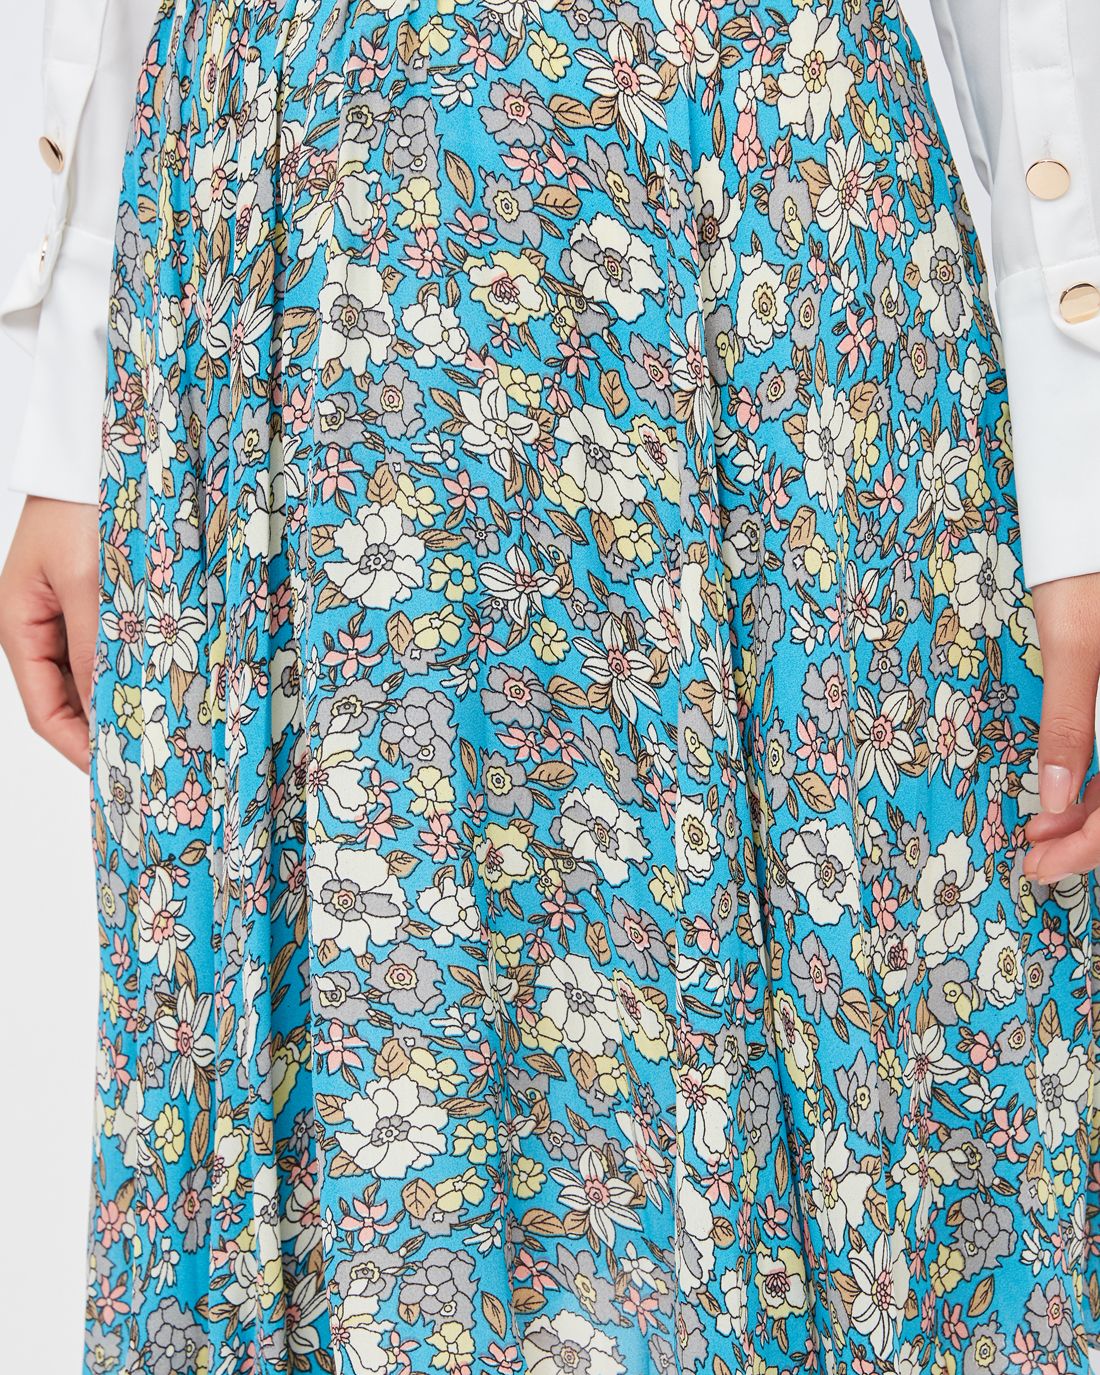 Đầm voan xanh hoa trắng phối bèo hở vai - Bán sỉ thời trang mỹ phẩm